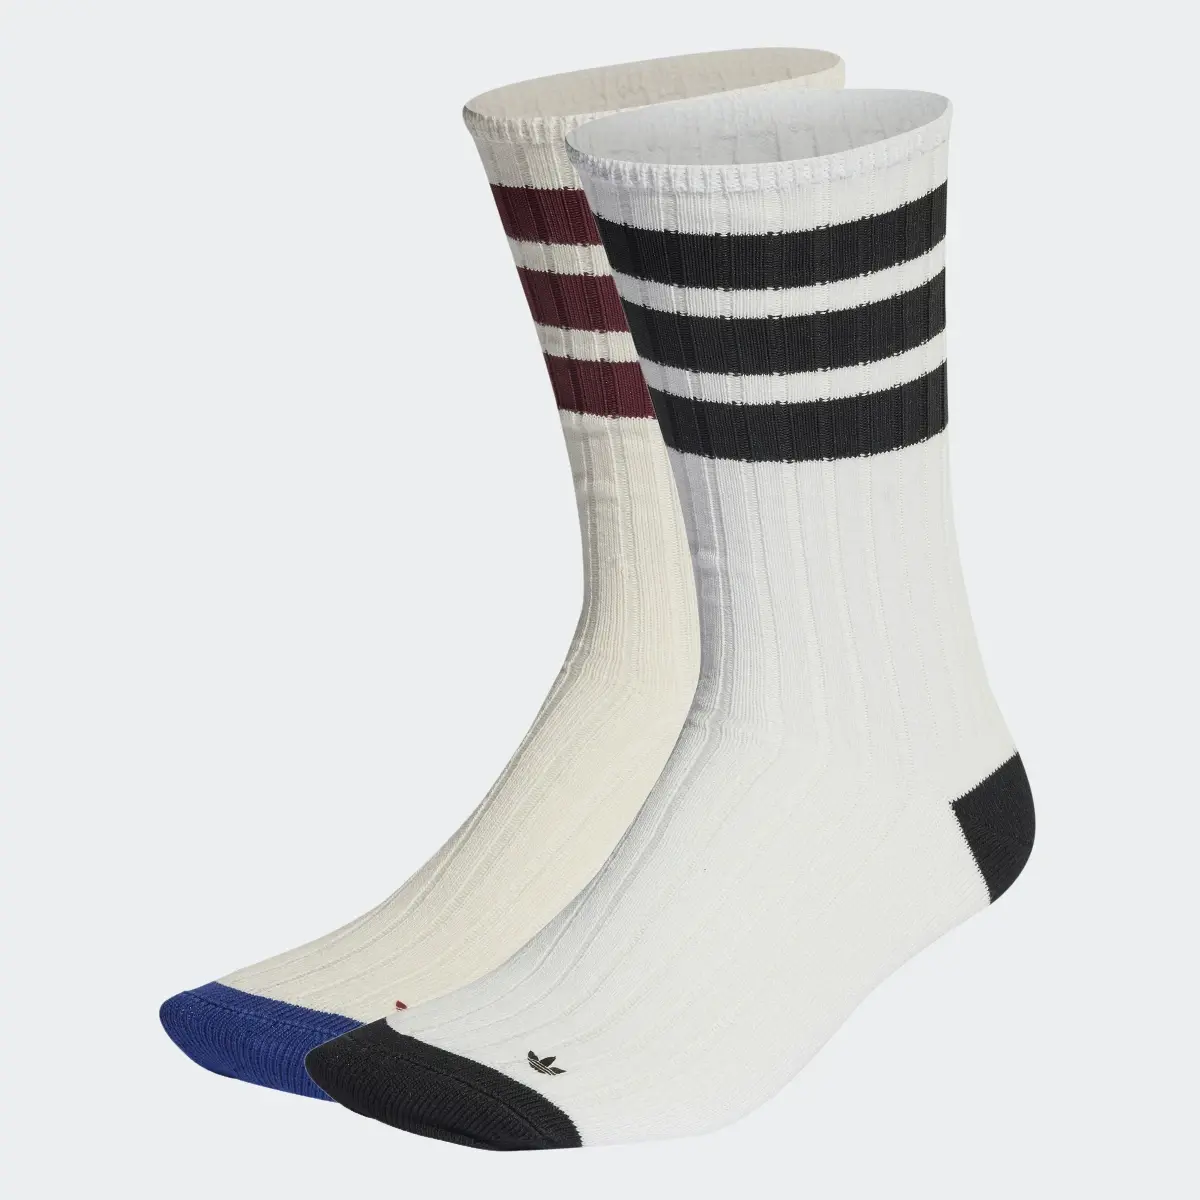 Adidas Premium Mid Crew Socks 2 Pairs. 2